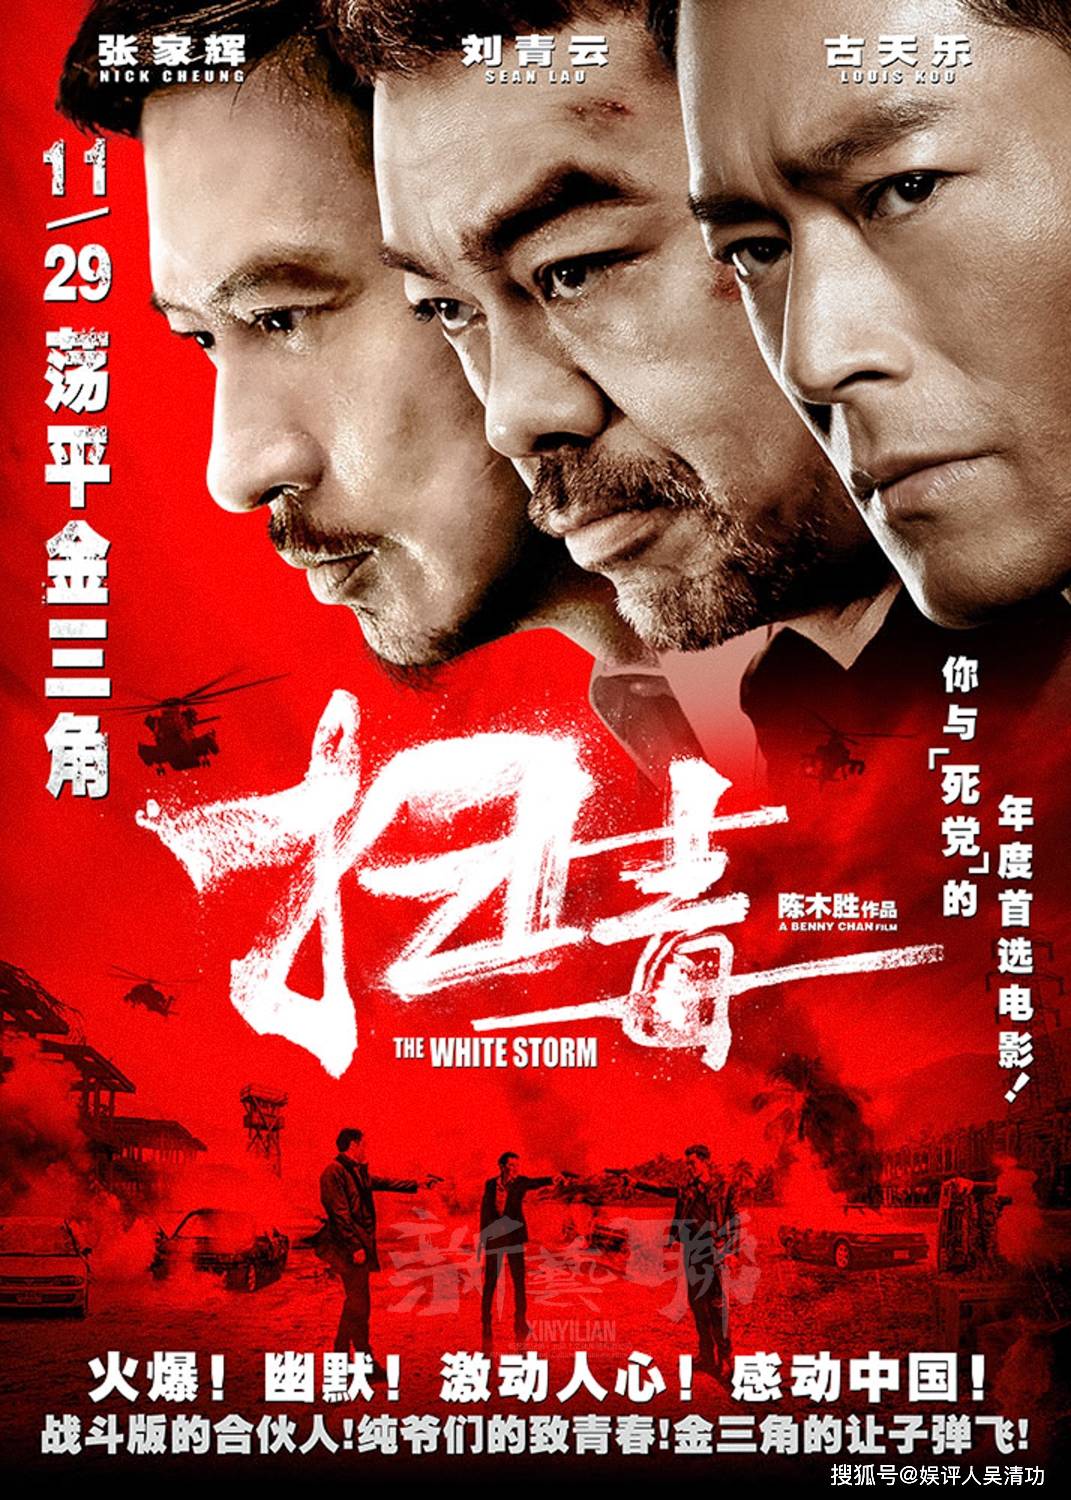 《扫毒》由陈木胜执导,古天乐,刘青云,张家辉主演,豆瓣评分高达7